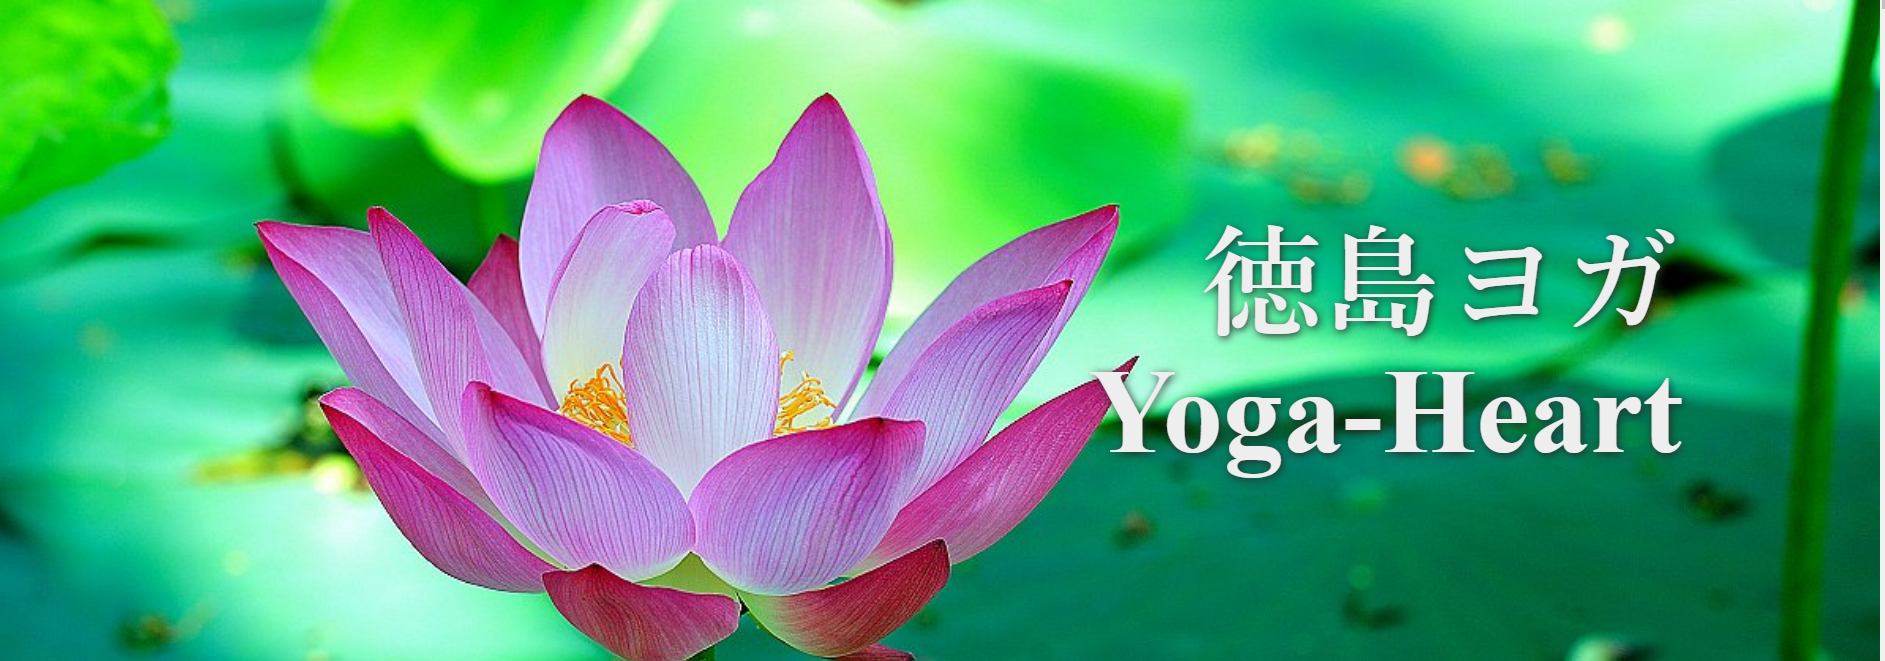 Yoga-Heart（ヨガハート）と蓮の花